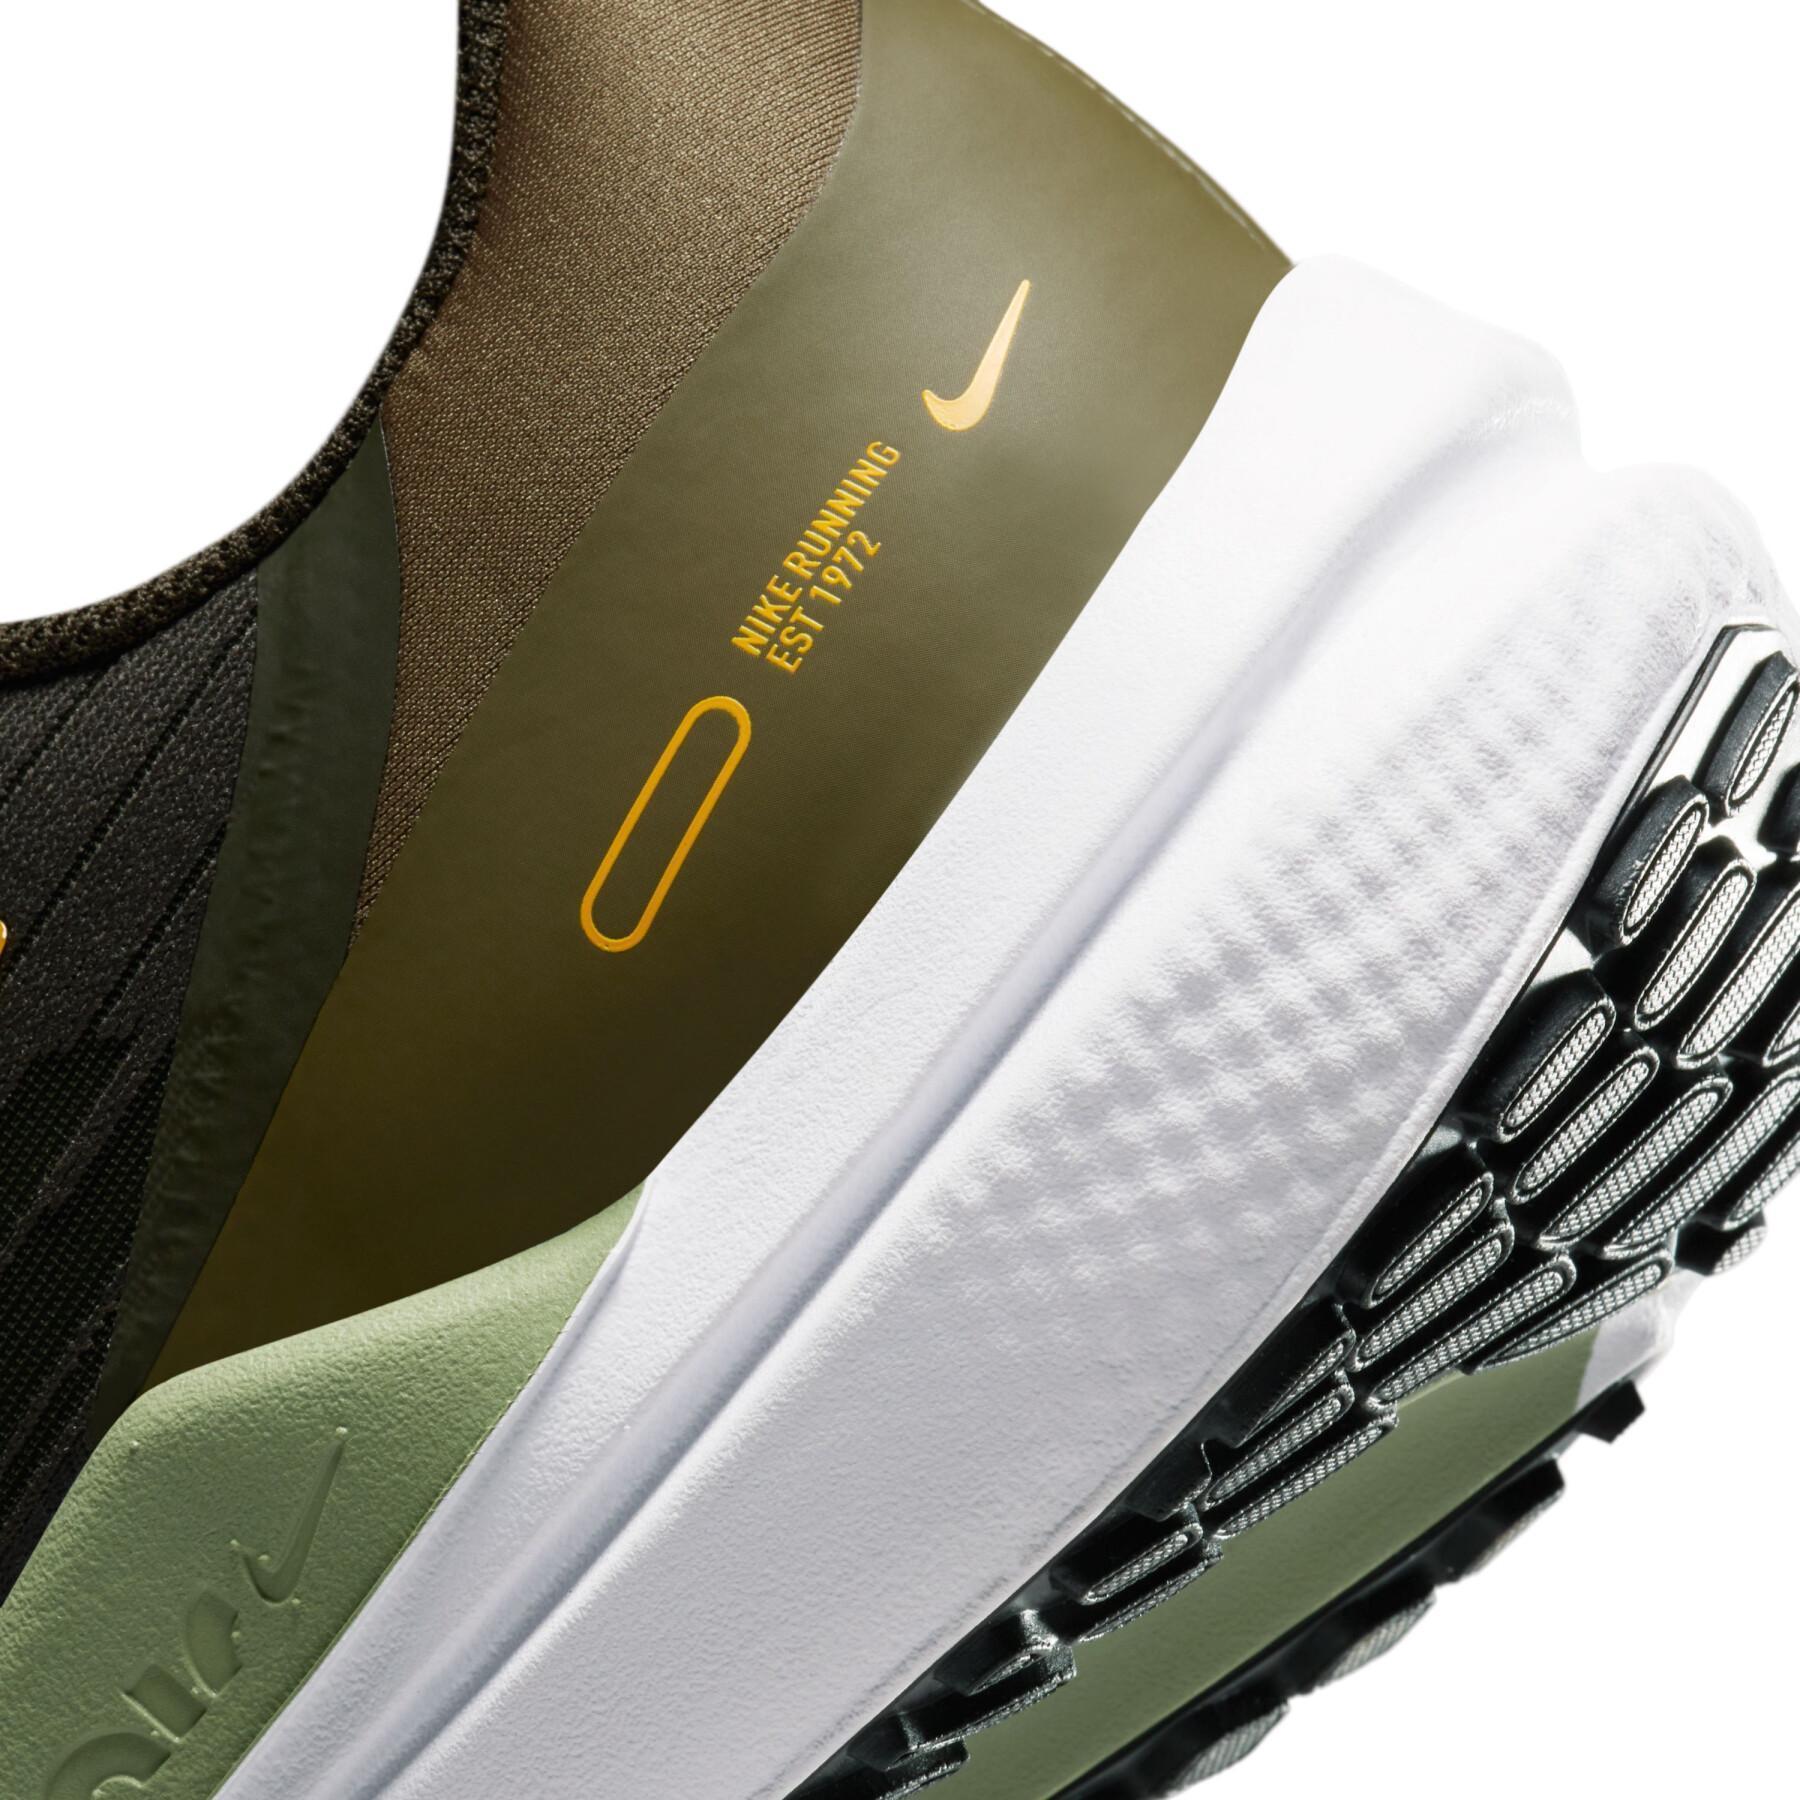 Zapatos de running Nike Winflo 9